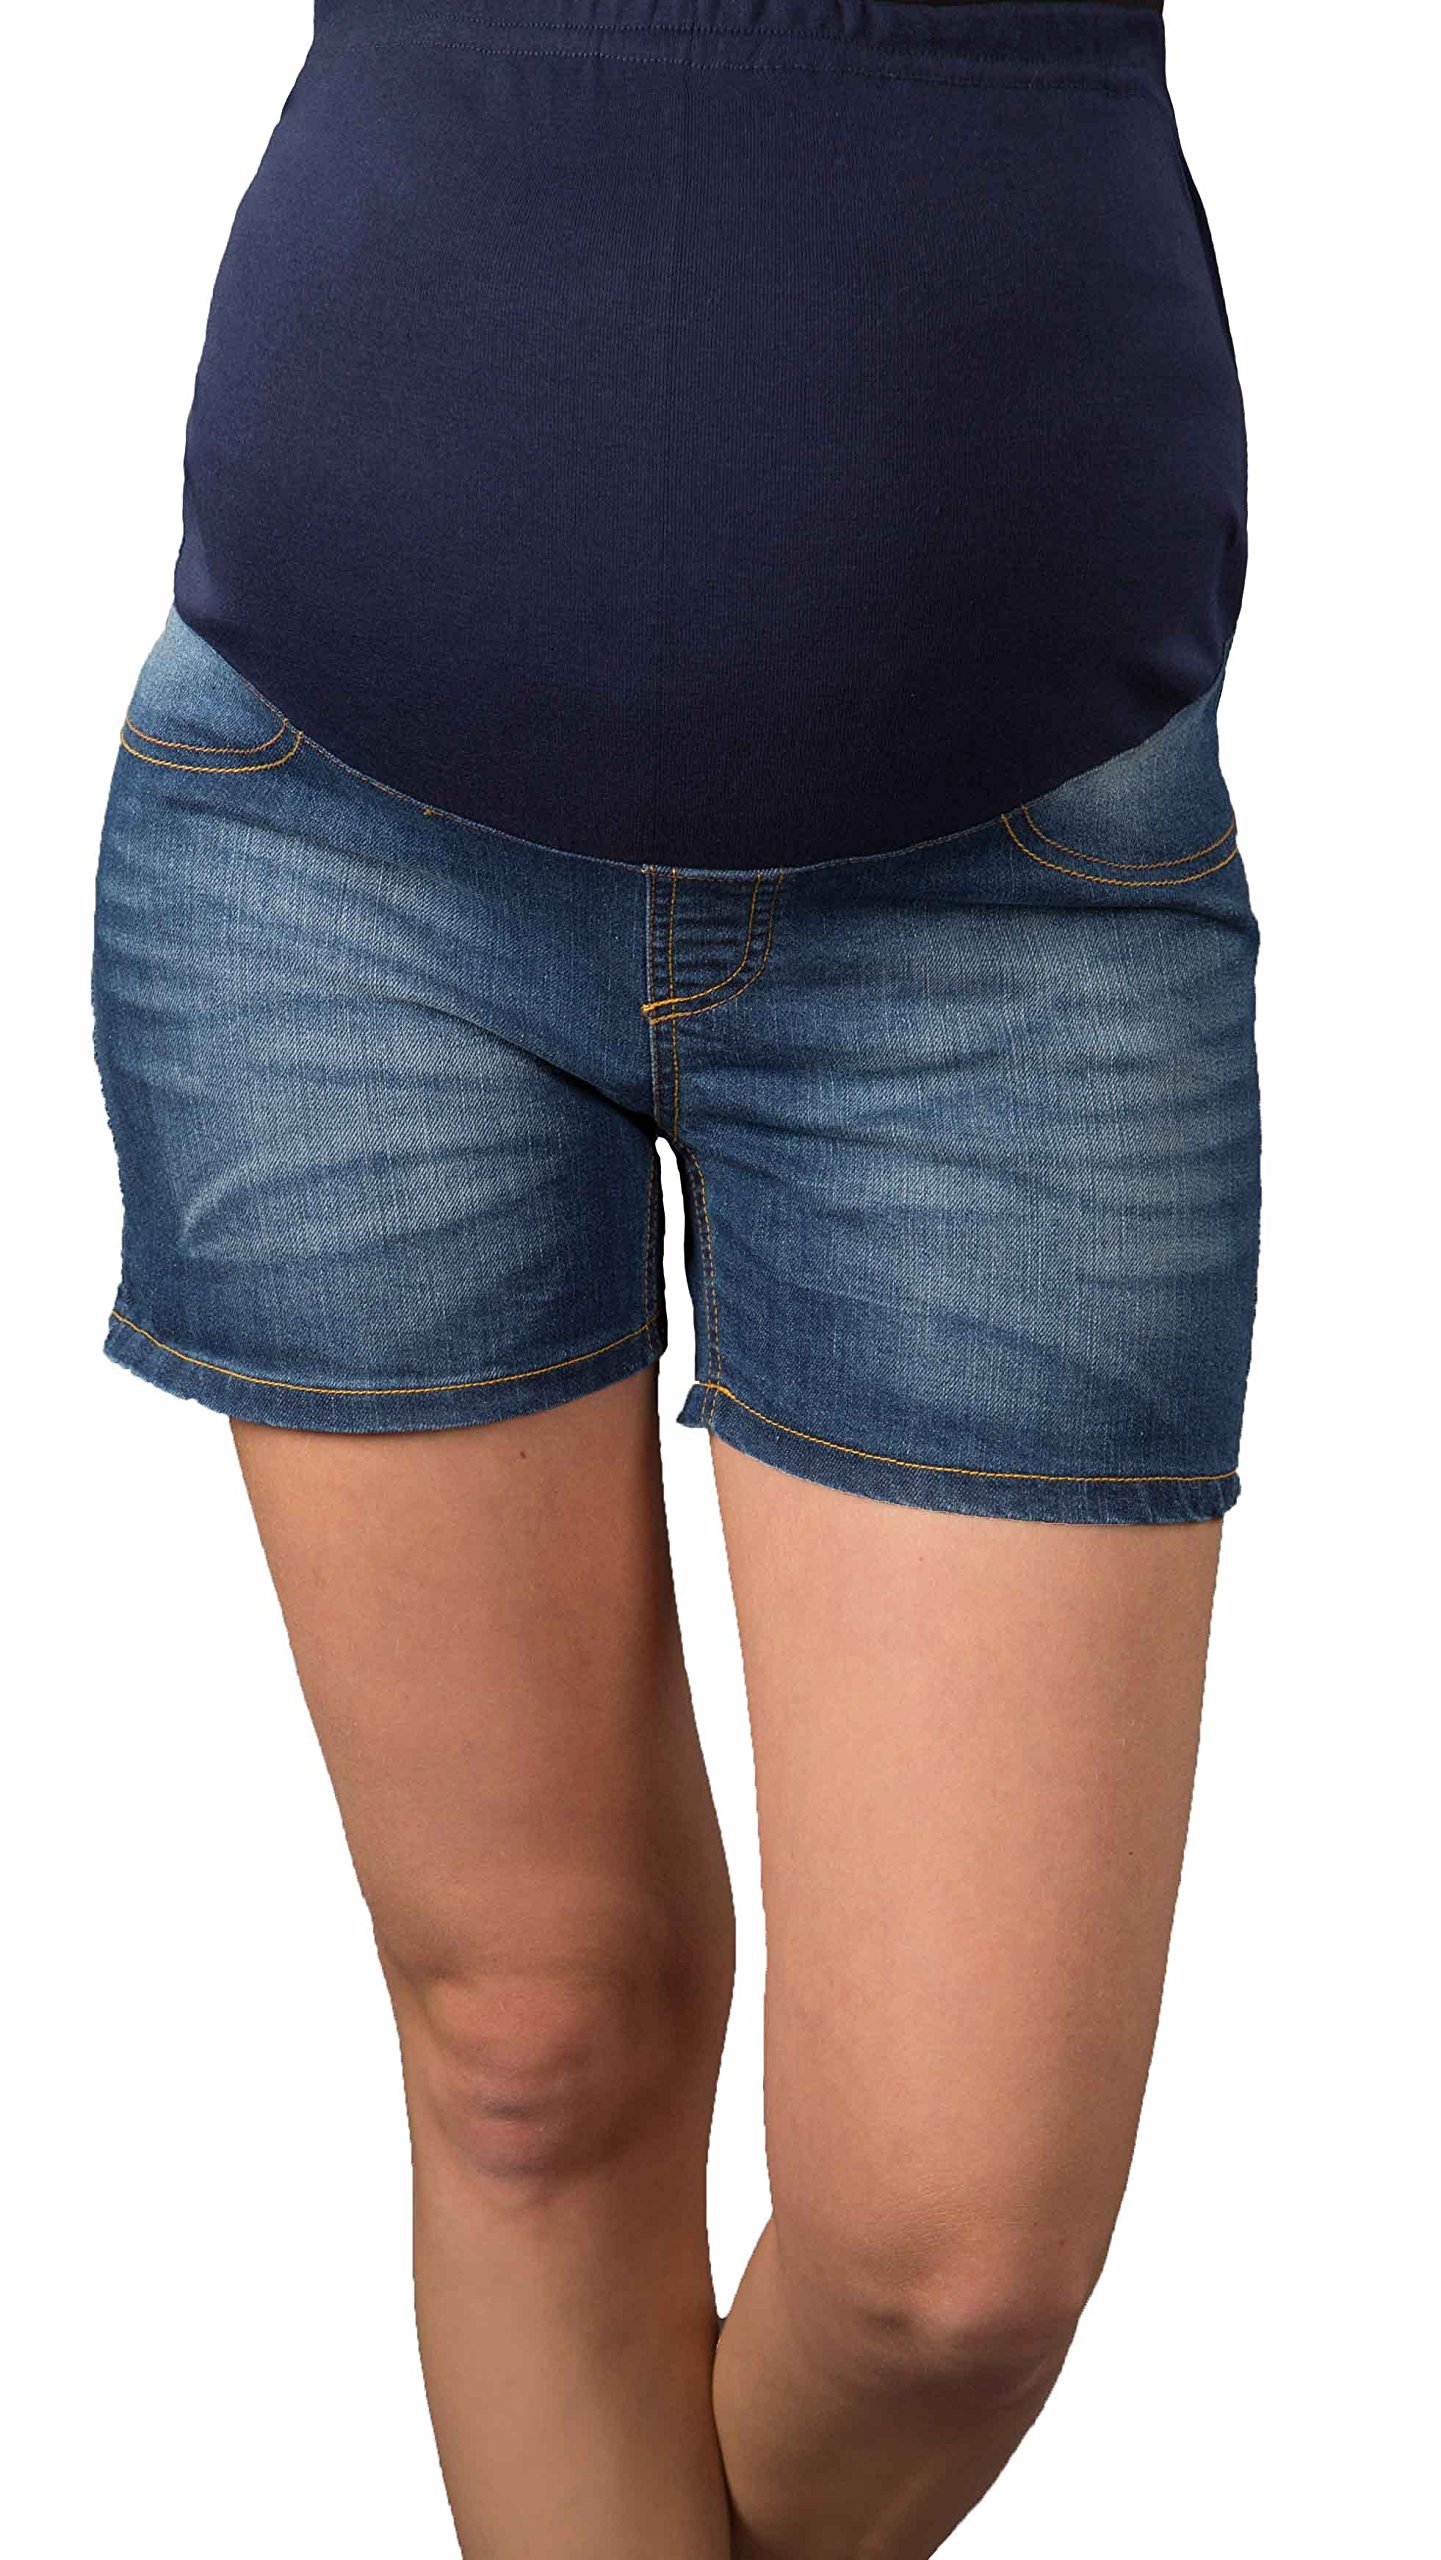 Kurze Jeans Umstandsshorts/Umstandshose Bauchband Umstandsmode/Shorts Denim Gr. 34